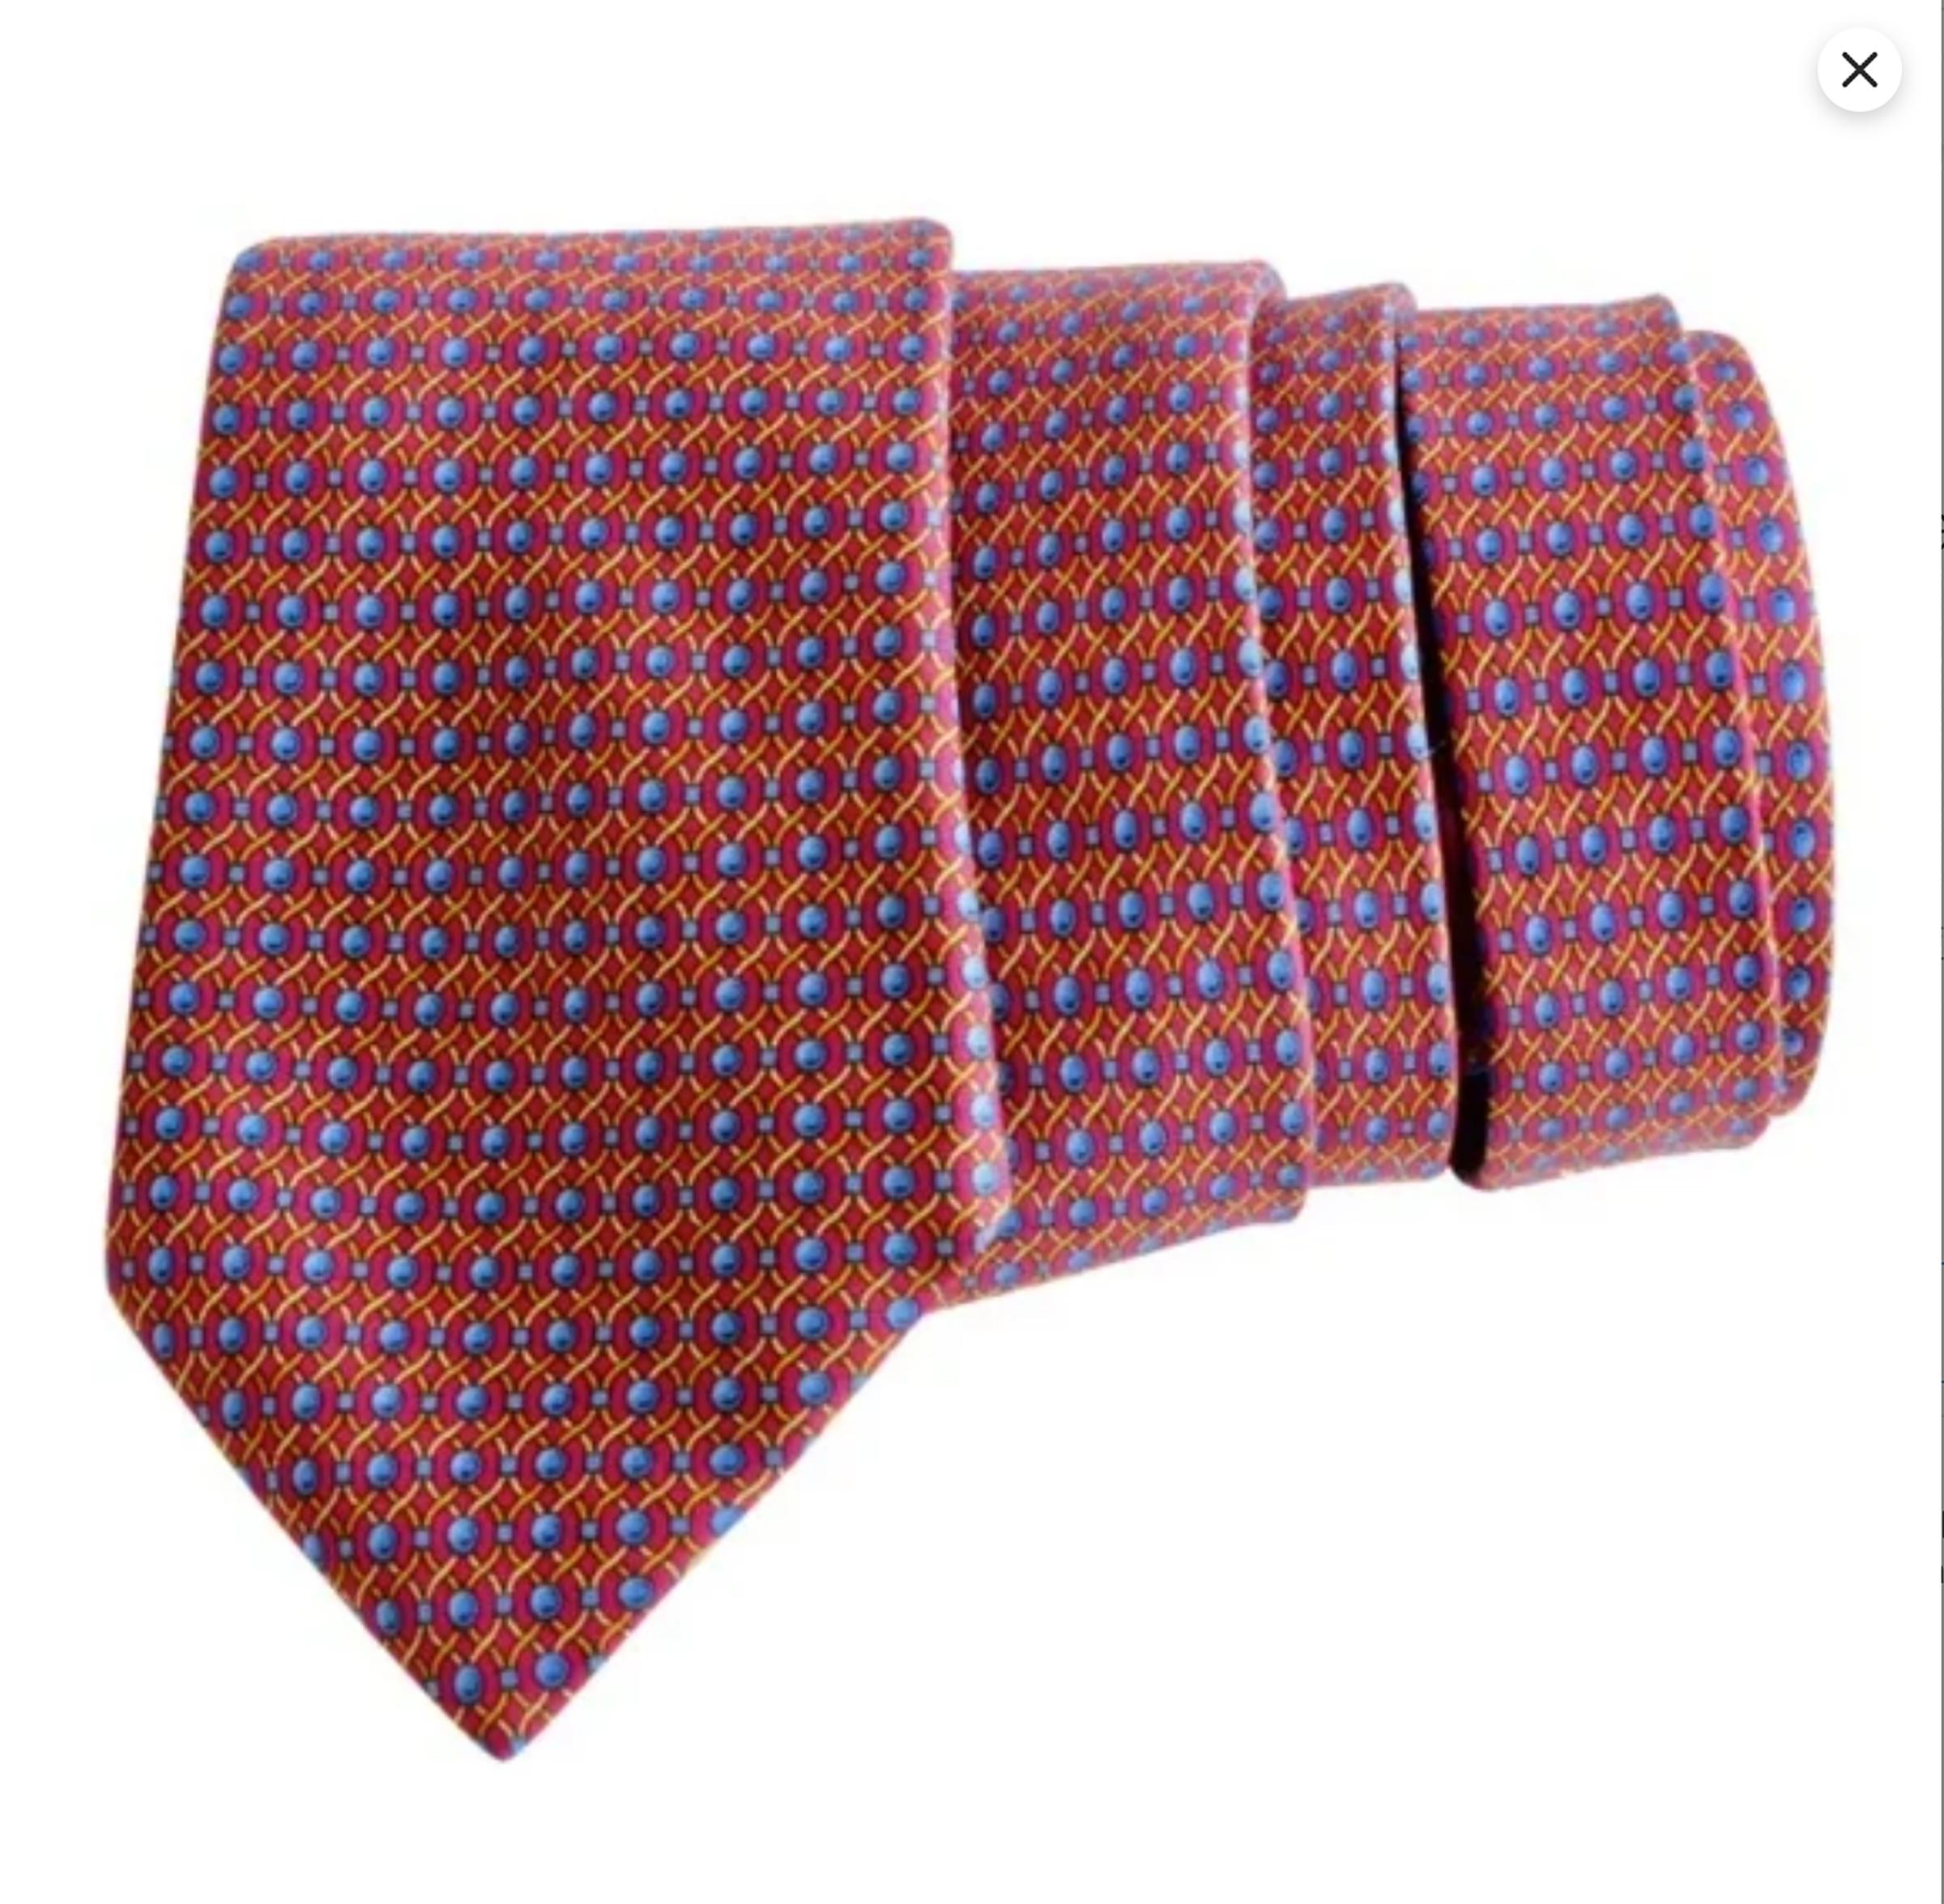 Marron Cravate Hermès en soie imprimée corde abstraite 7242 MA 1990